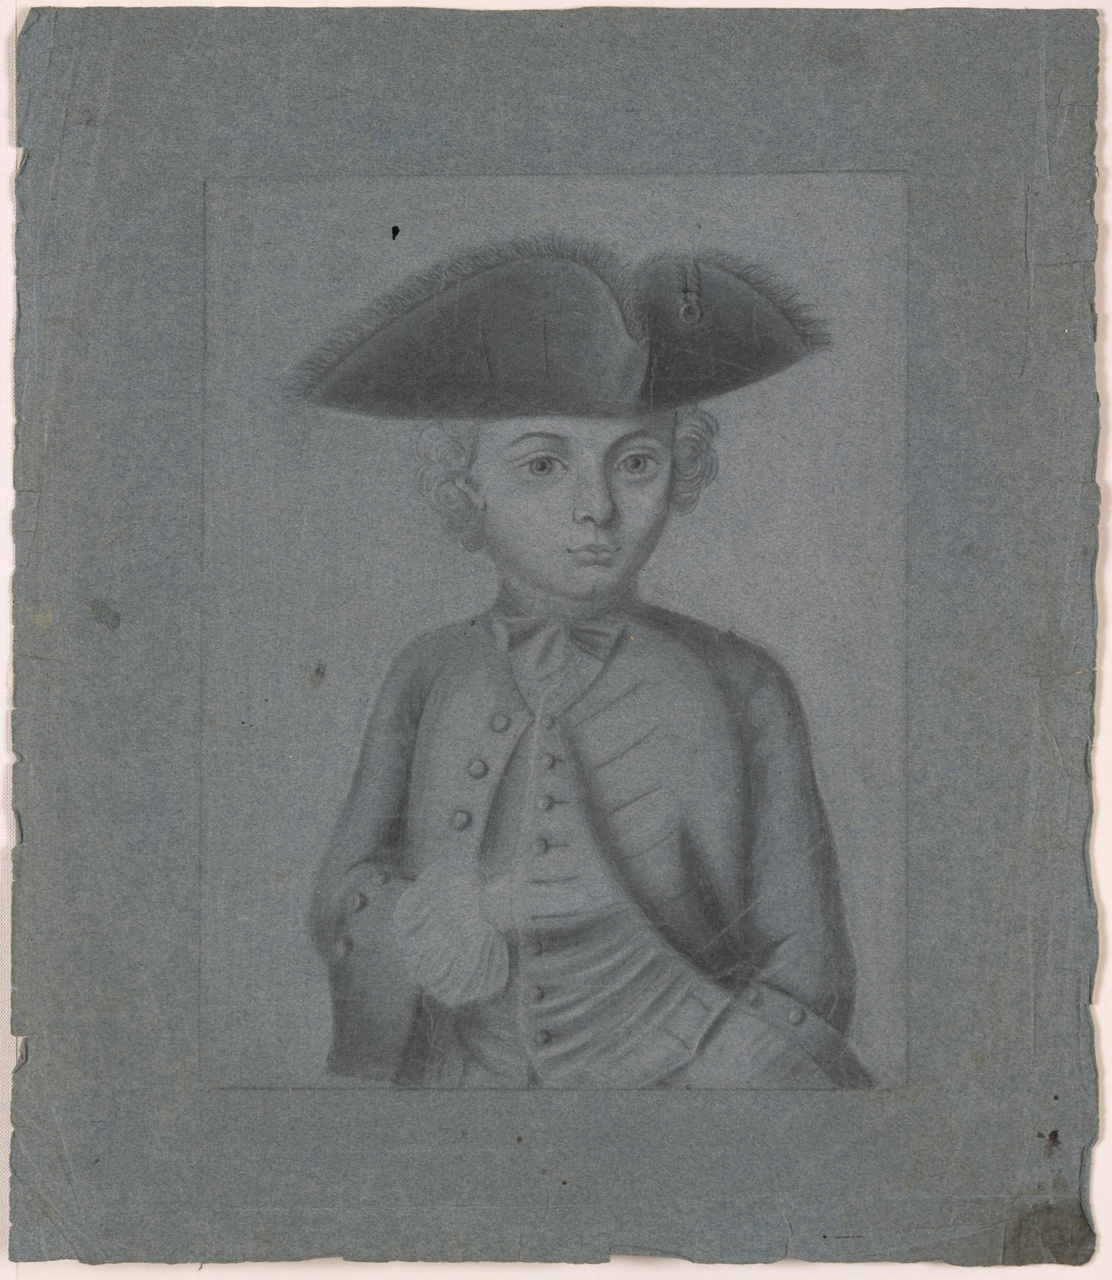 Portret van een jongetje, vermoedelijk uit het geslacht Martens